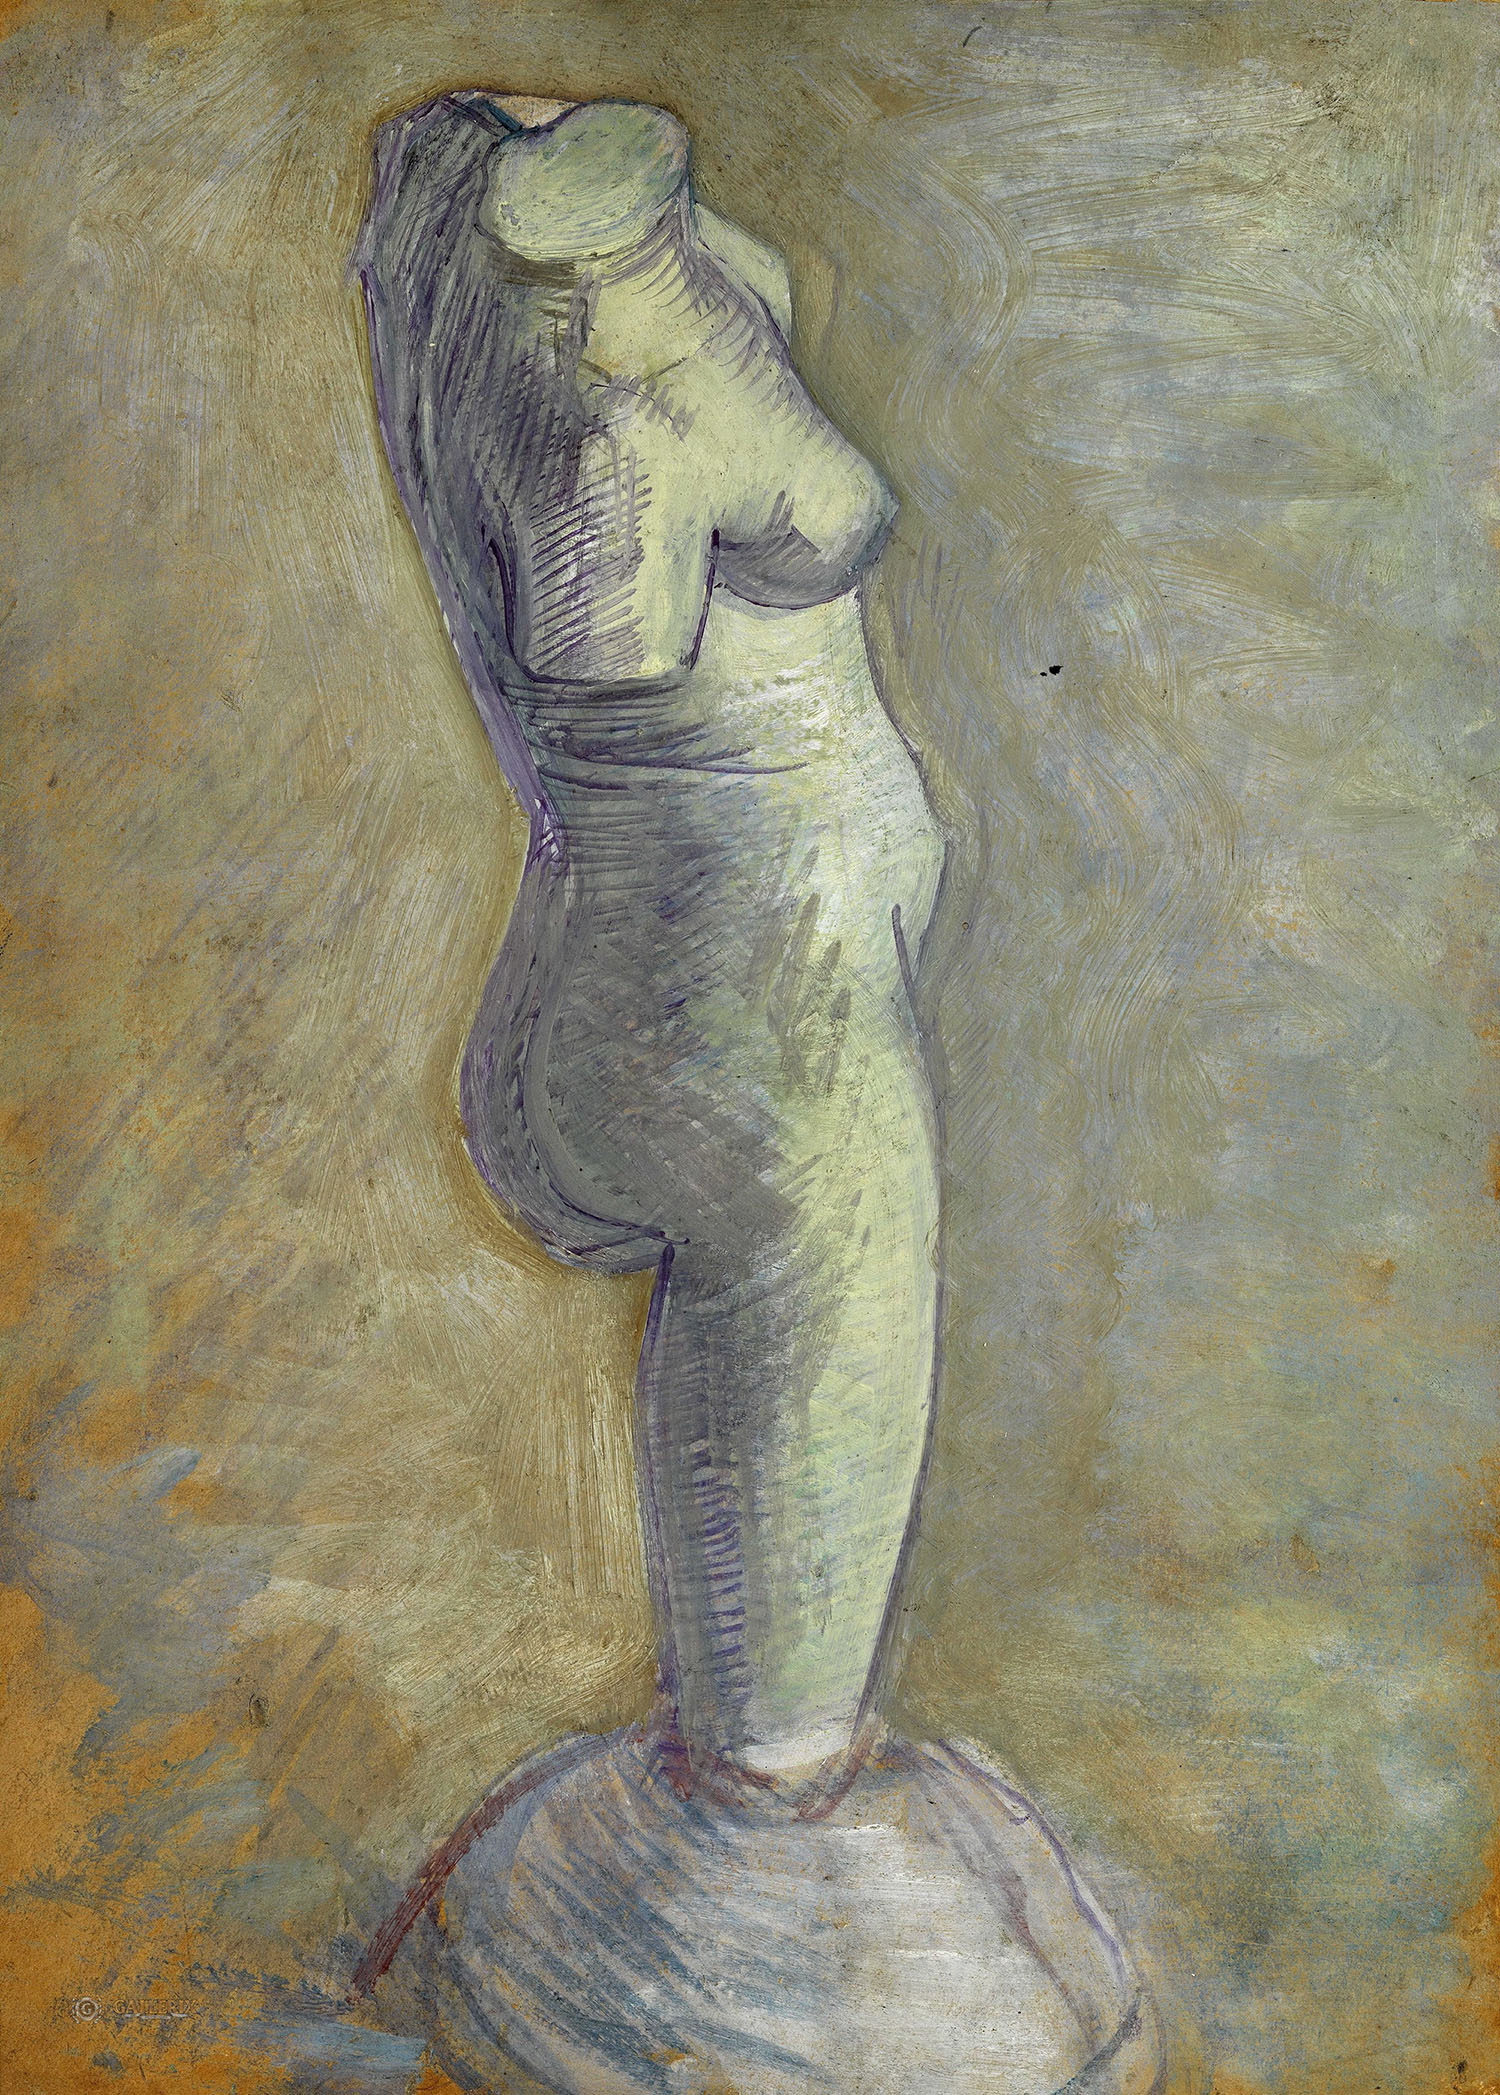 Винсент Ван Гог. "Гипсовый женский торс". 1886. Музей Ван Гога, Амстердам.